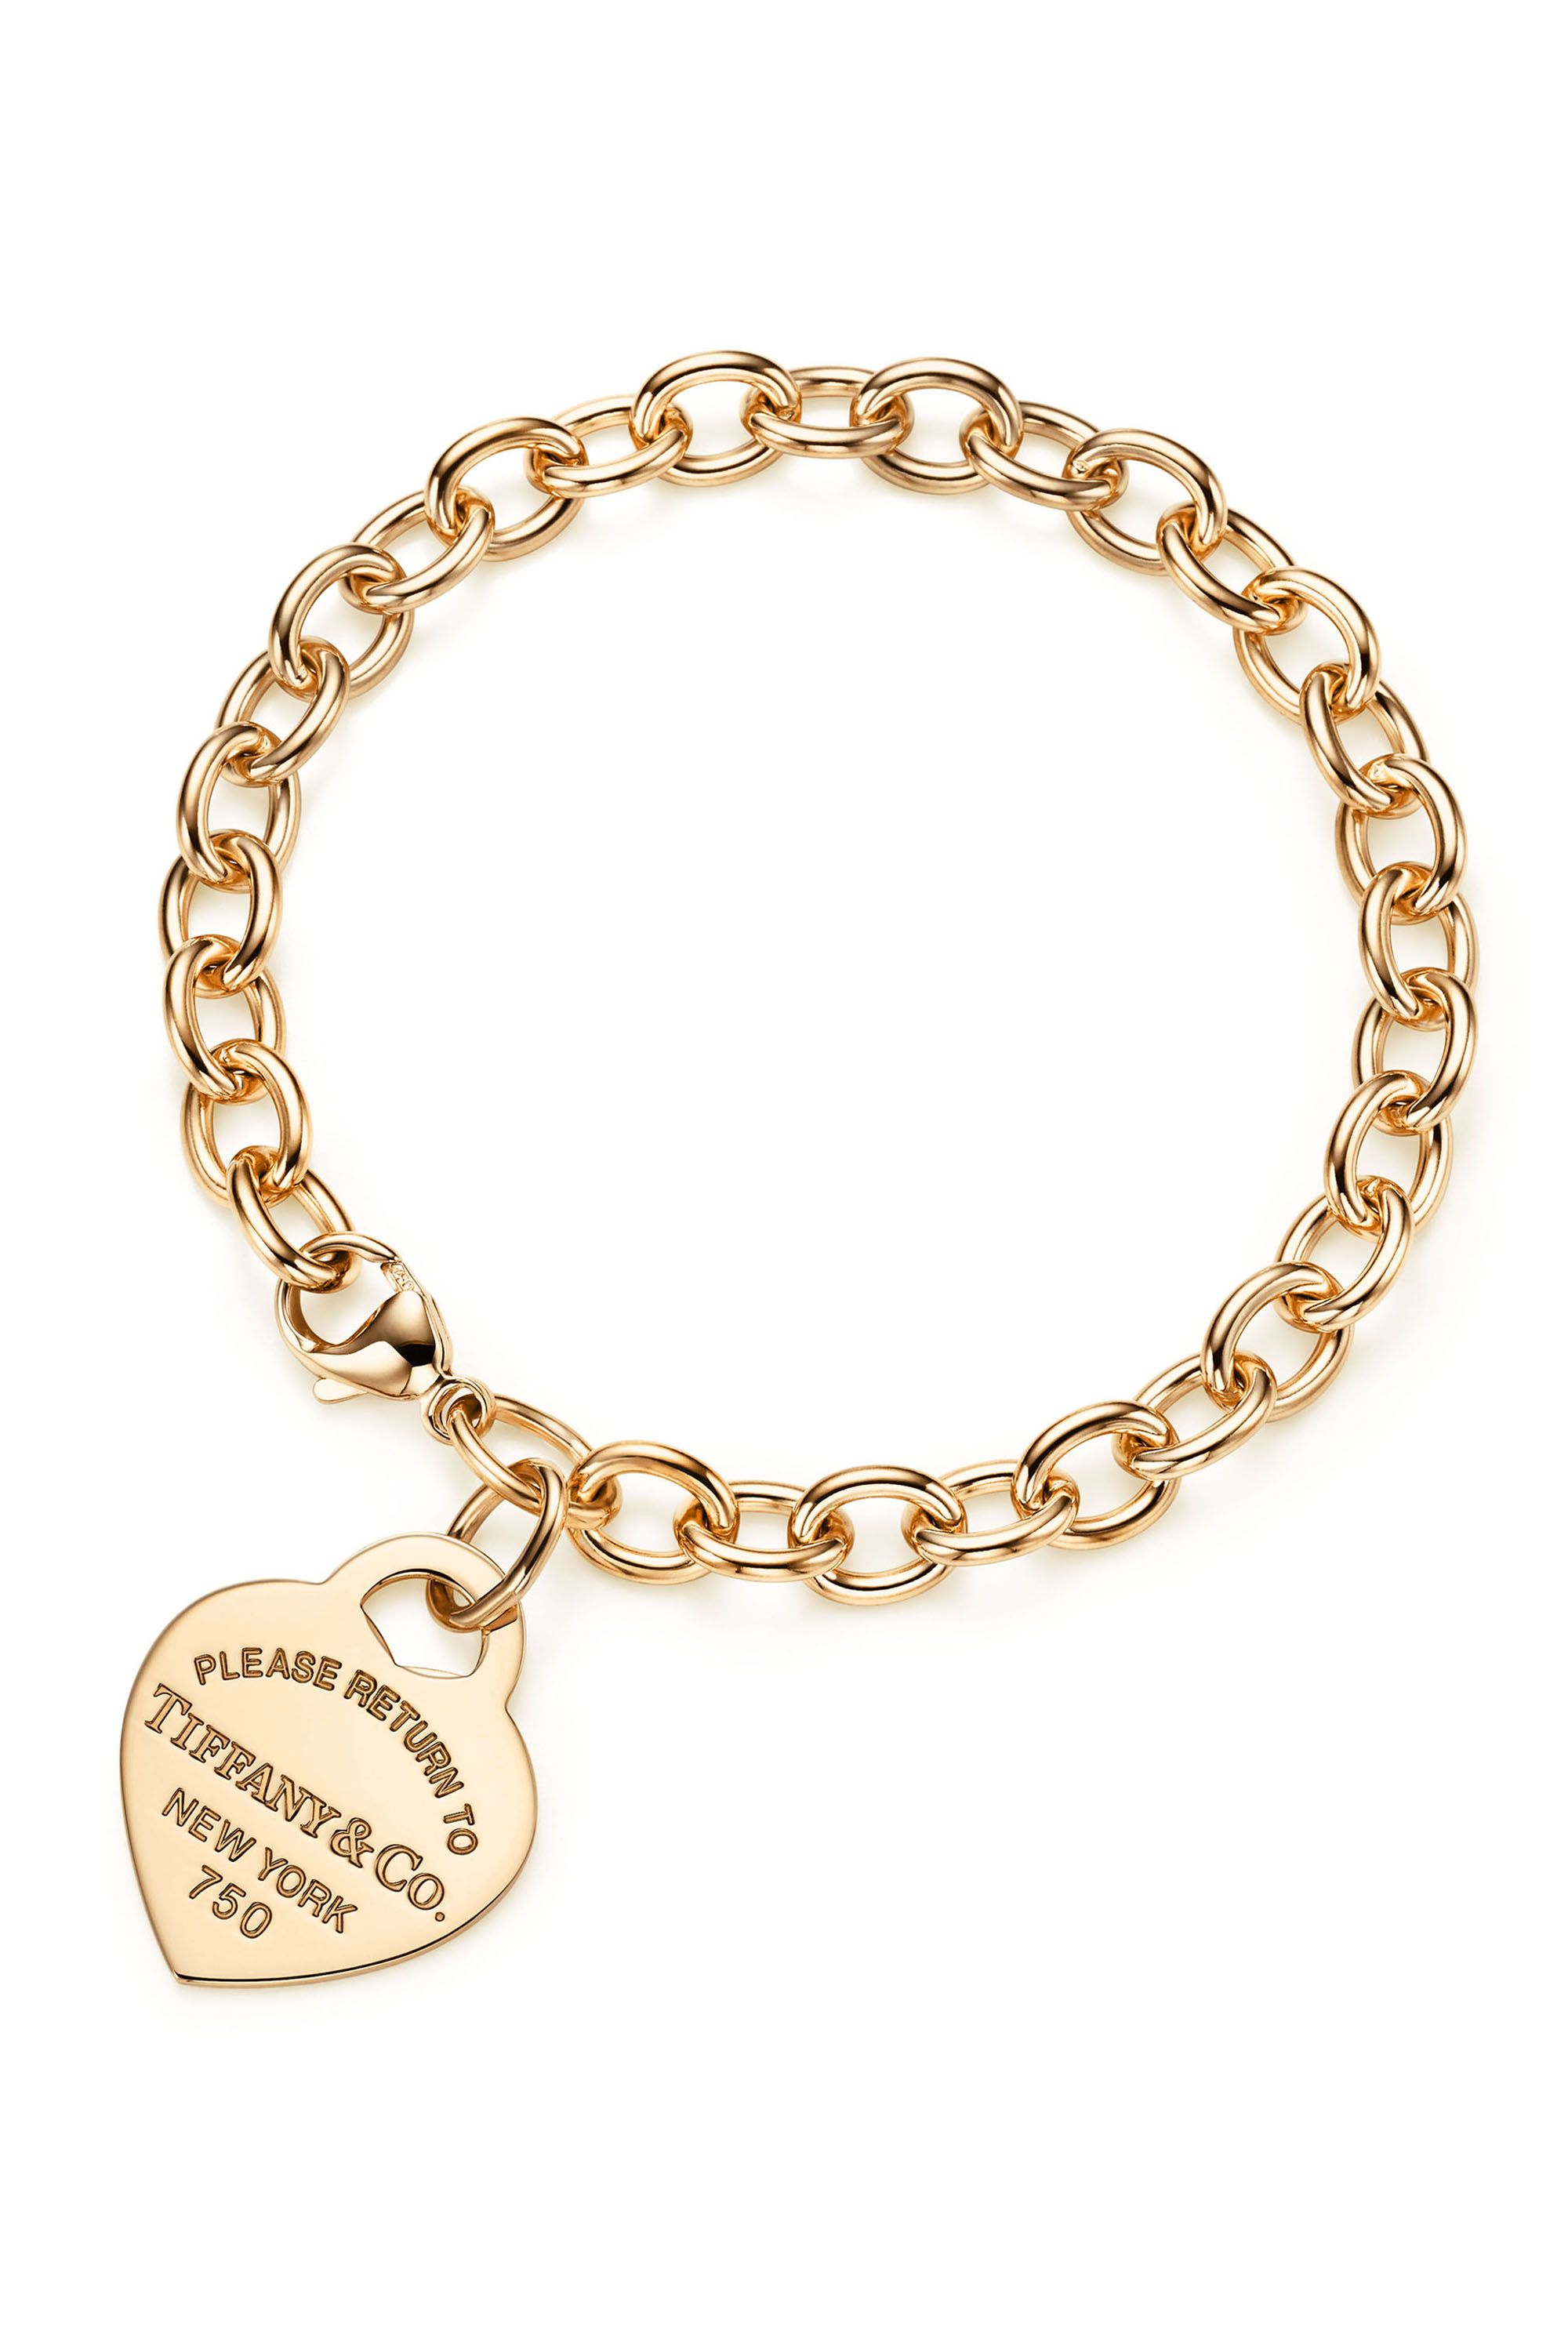 Rihanna wears sweet Annoushka charm bracelet from A$AP Rocky